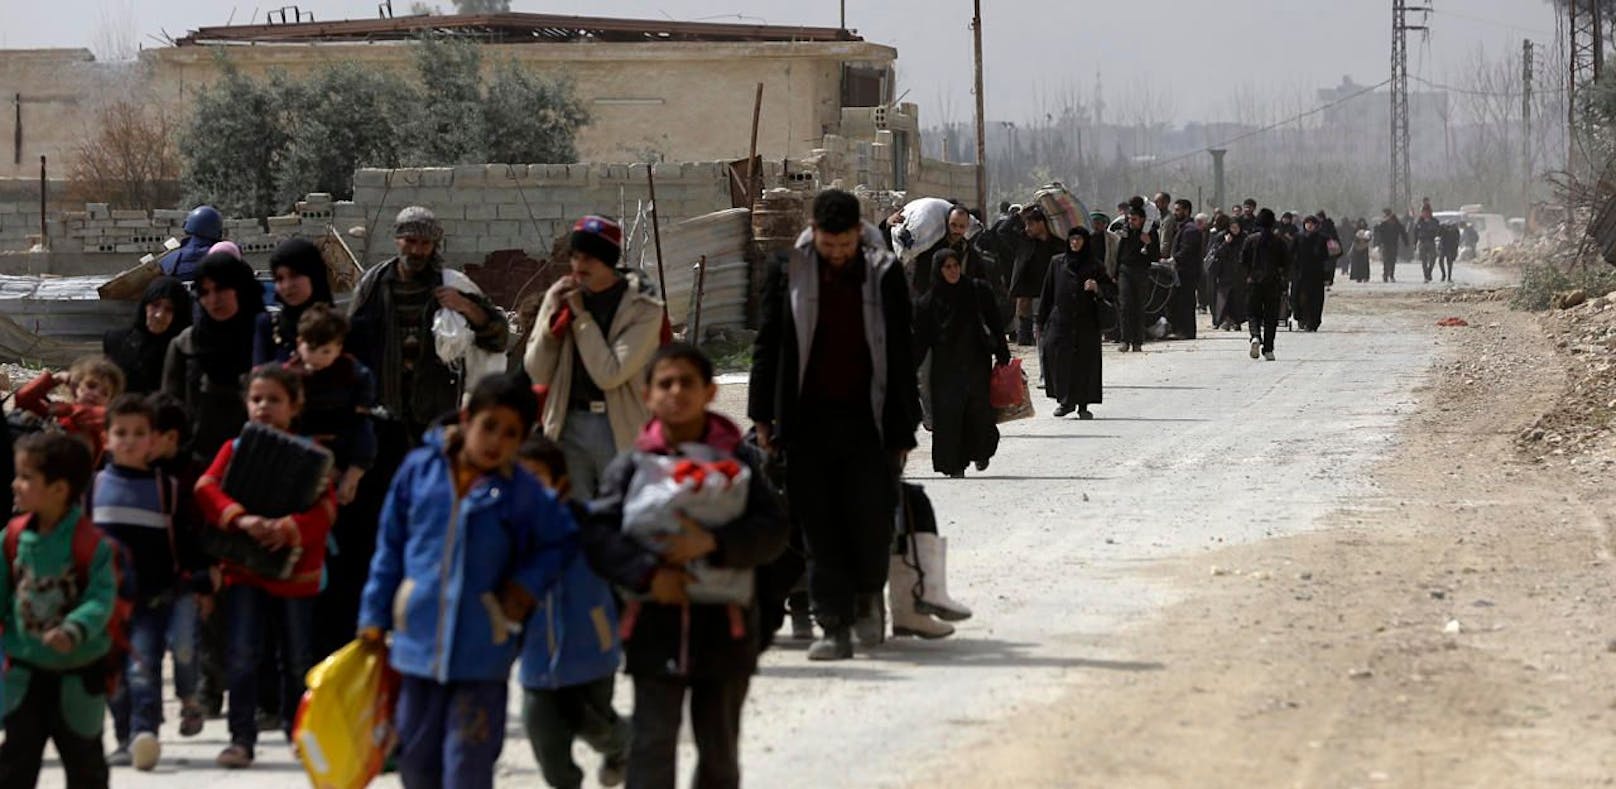 Afrin ist fast komplett eingekreist, Tausende Menschen fliehen aus der Stadt.